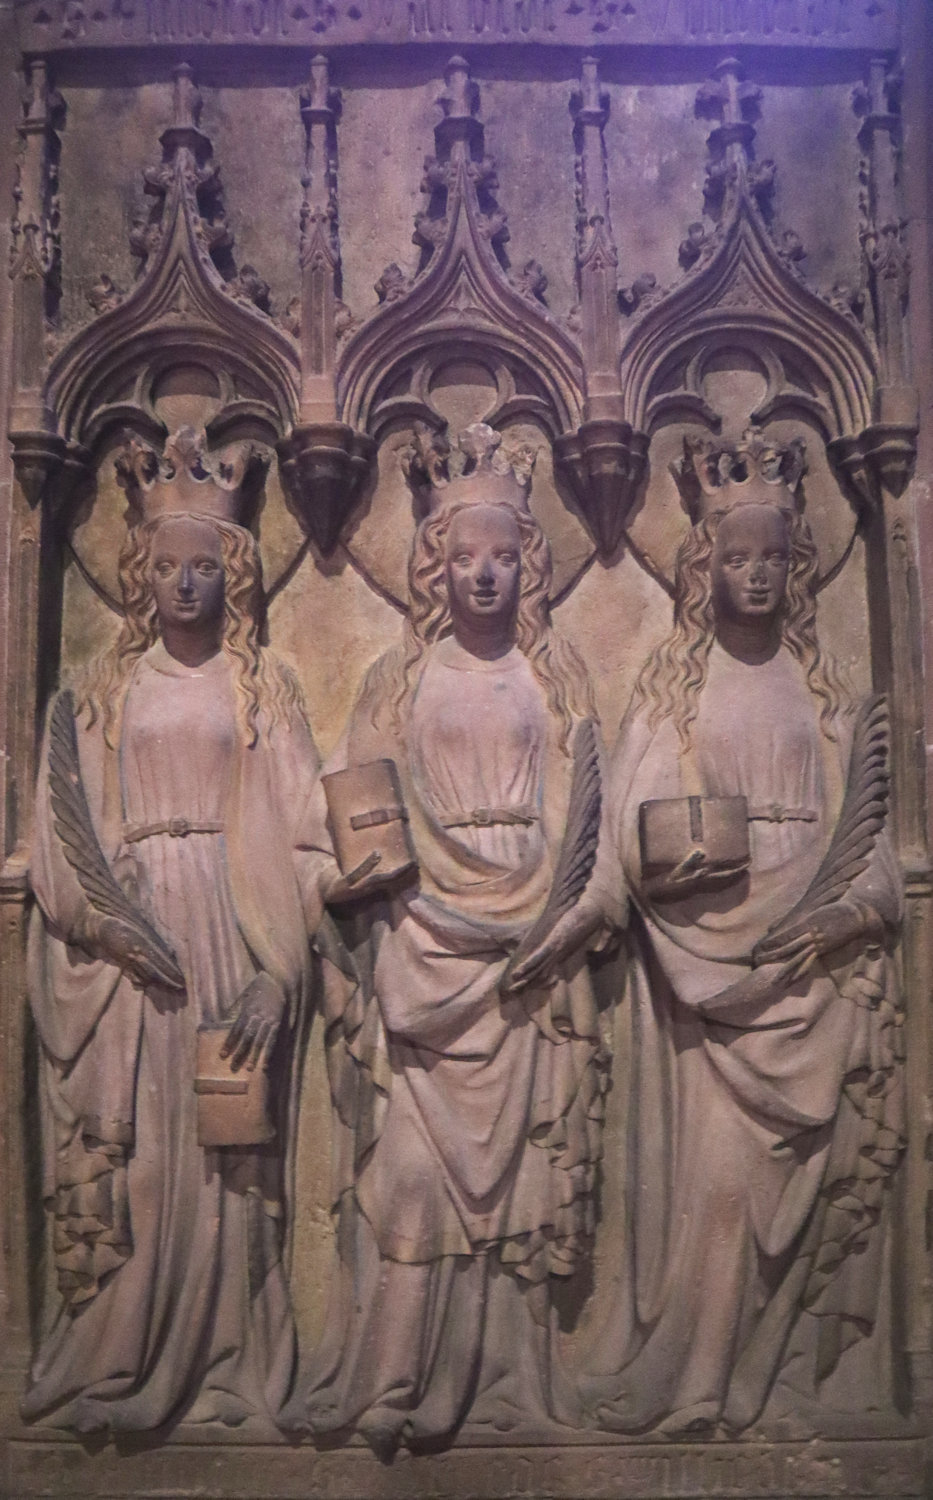 Steinskulpturen: Warbede, Embede und Wilbede, um 1430, ursprünglich im ehemaligen Bergkloster, heute in der Nikolauskapelle im Dom in Worms